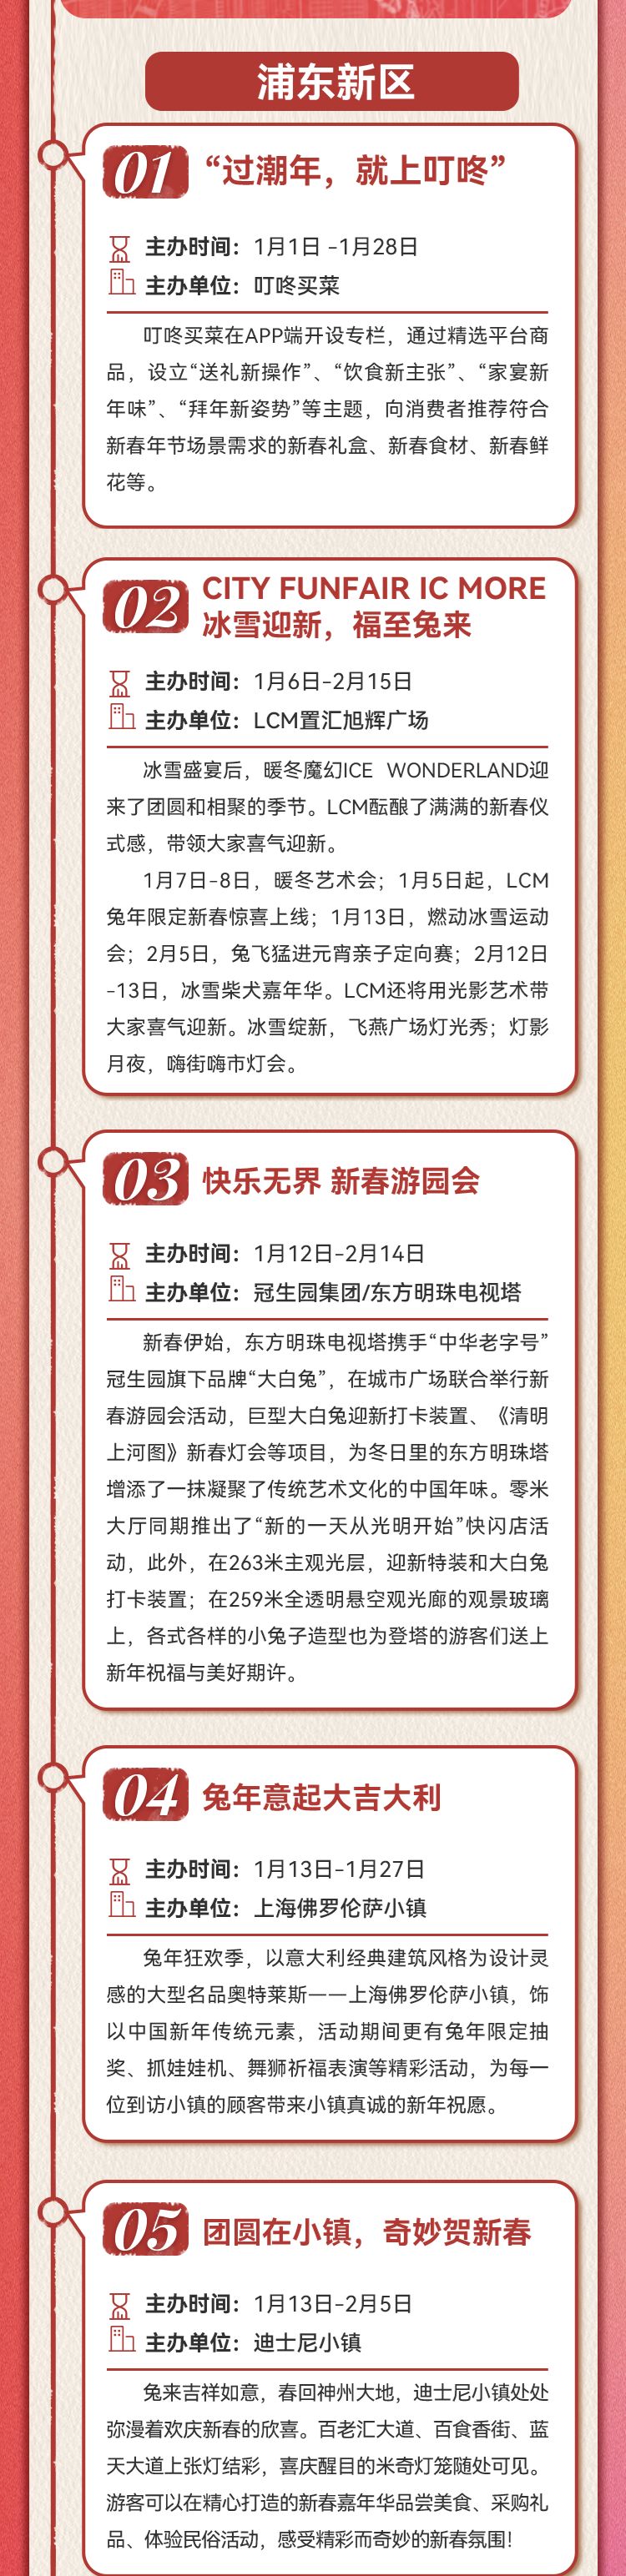 2023上海春节购物打折活动一览(各区)